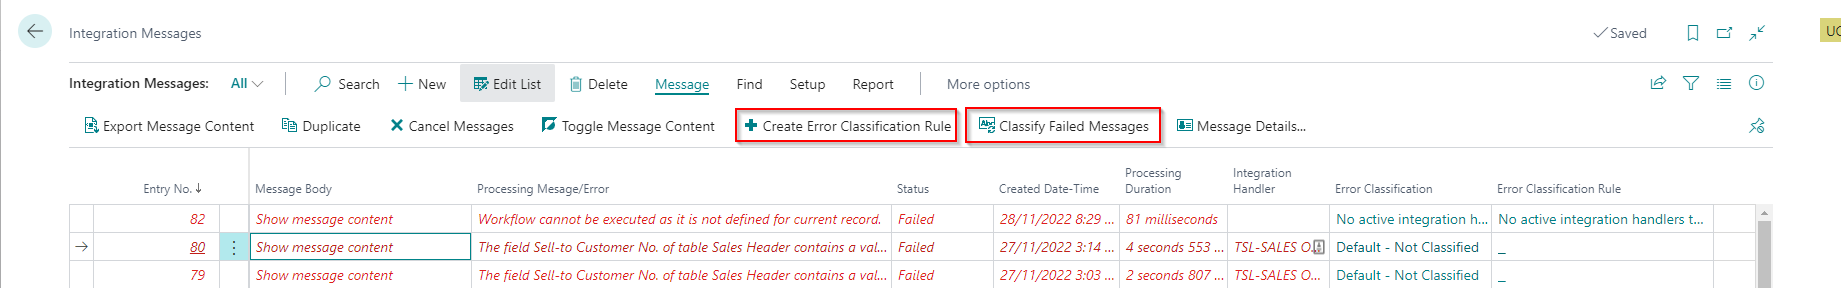 Add new error classification